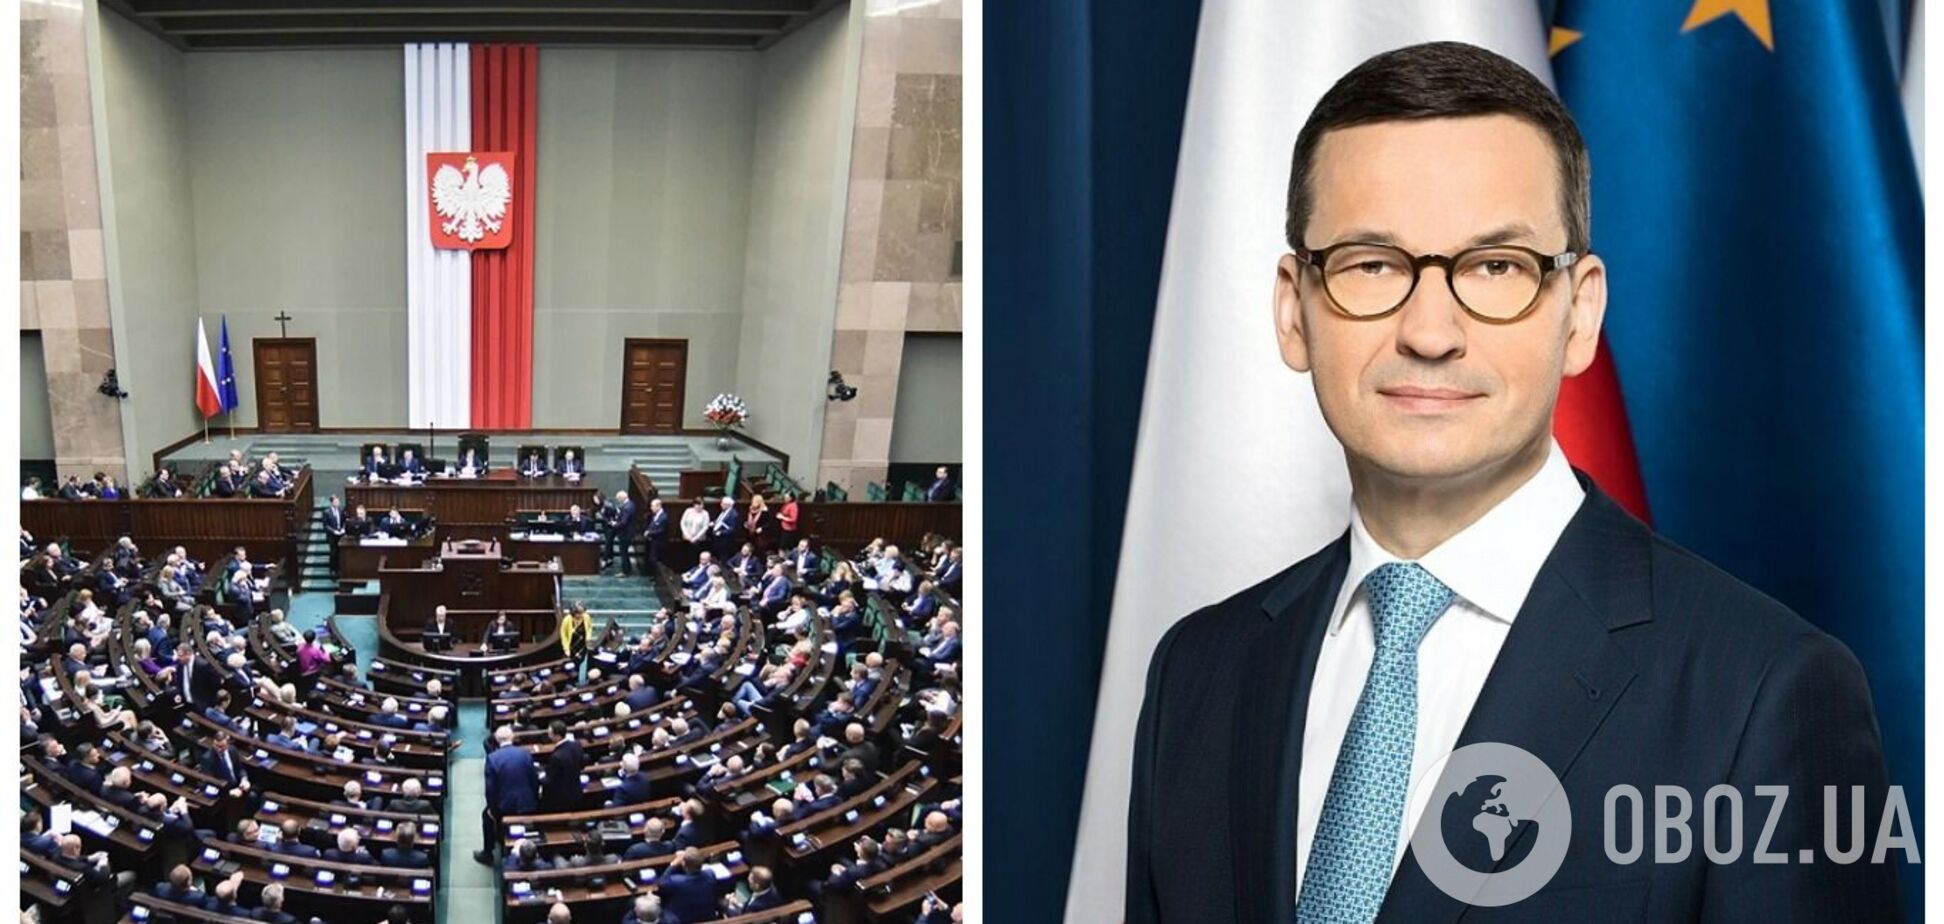 Оппозиция побеждает, Моравецкий рвется создавать новое правительство: результаты выборов в Польше